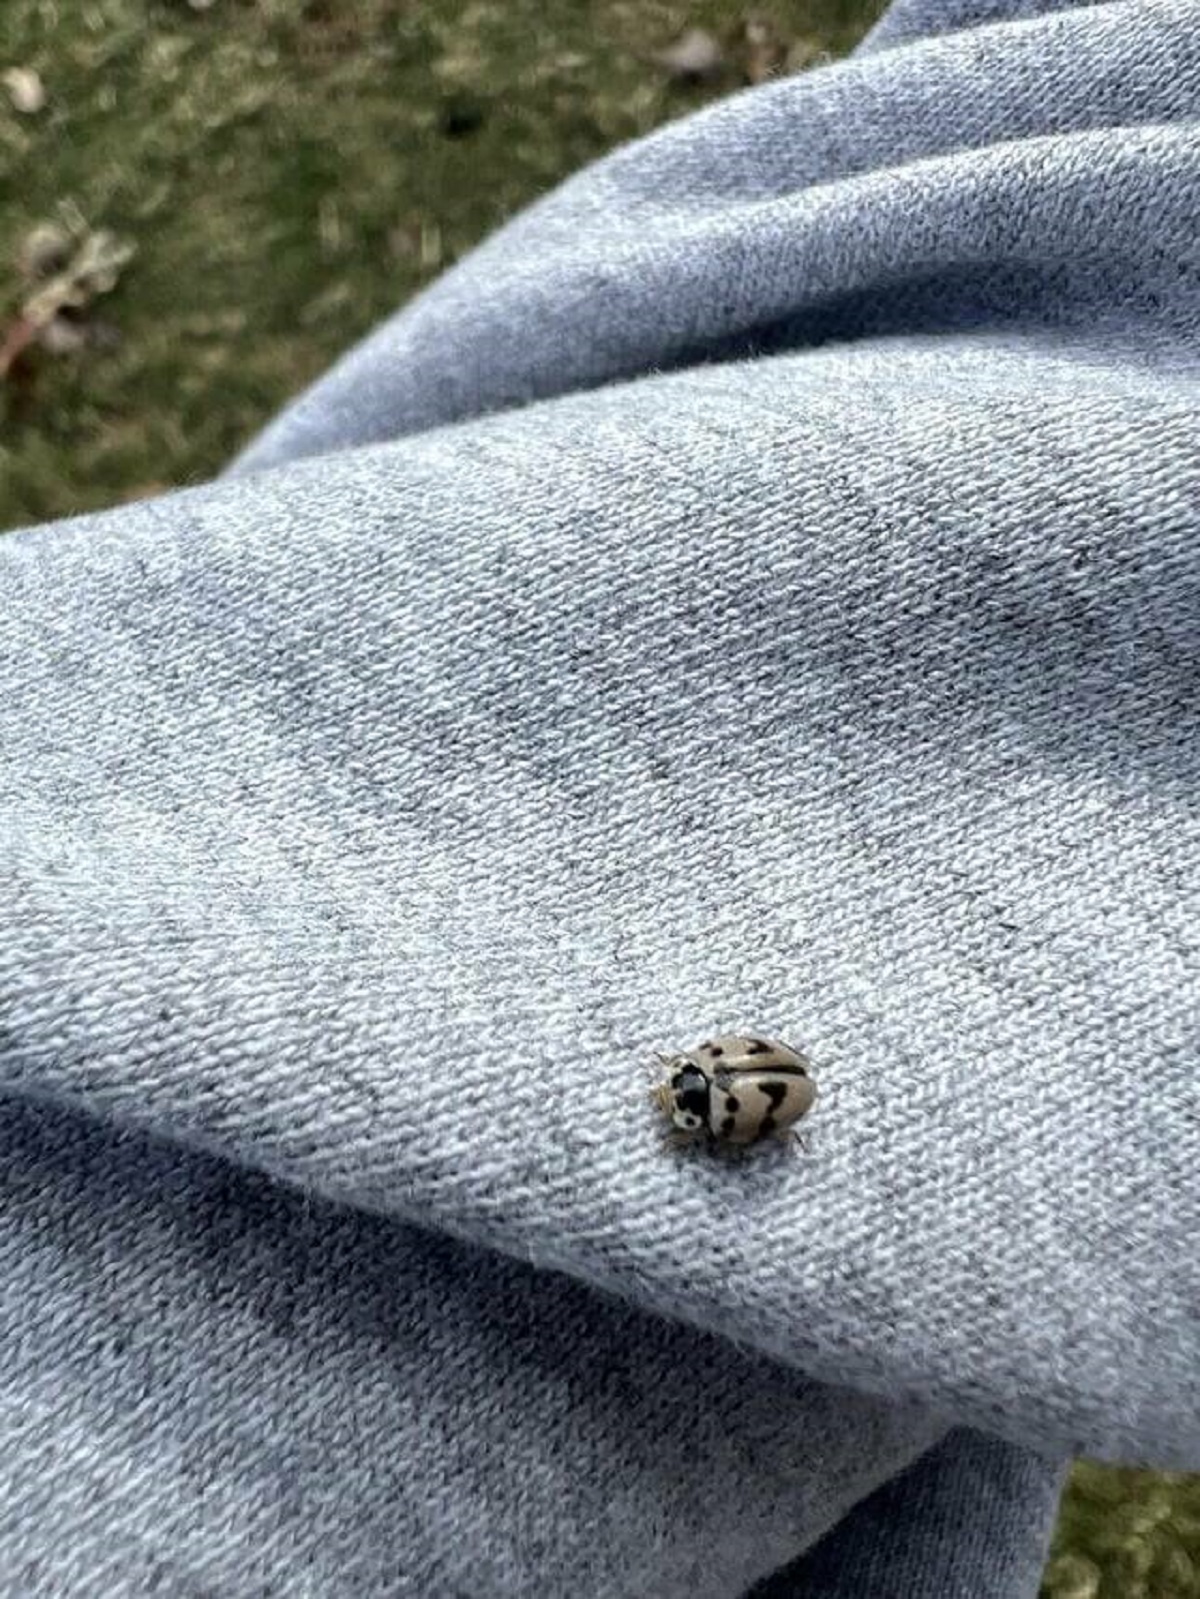 "Grey lady bug found in park nearby"